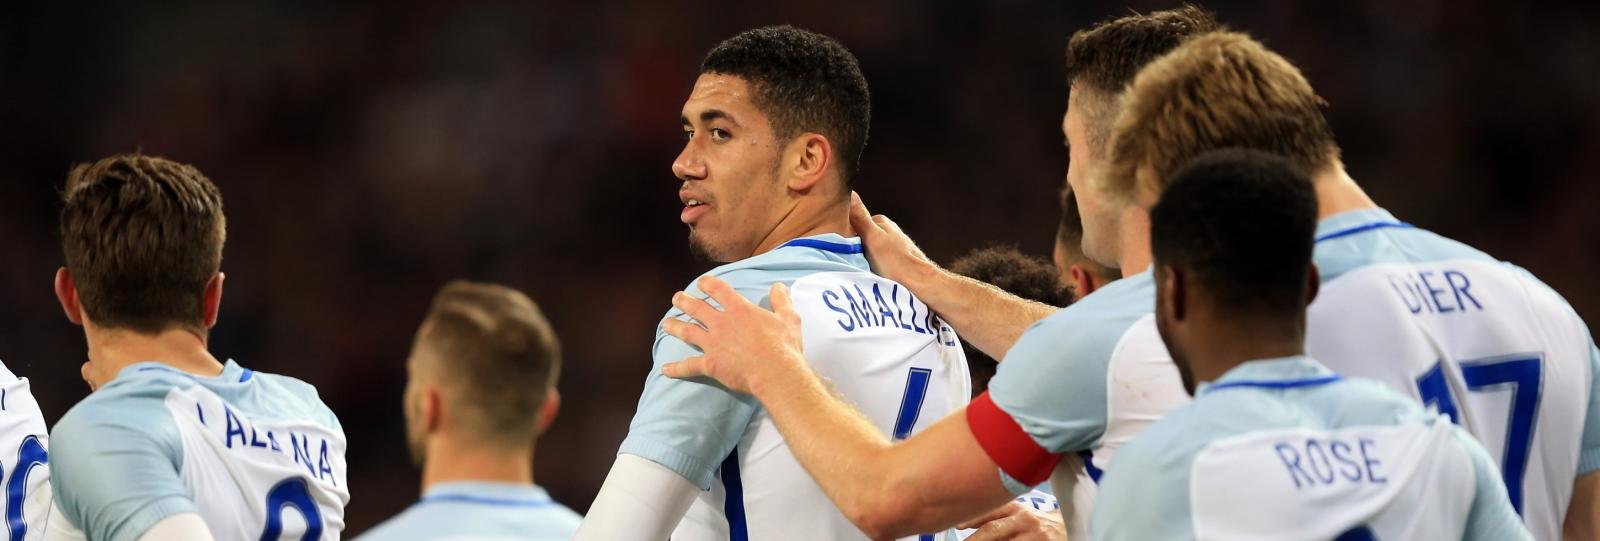 Euro 2016 Q&A: Draper tips England to reach the quarter-finals and Harry Kane to shine